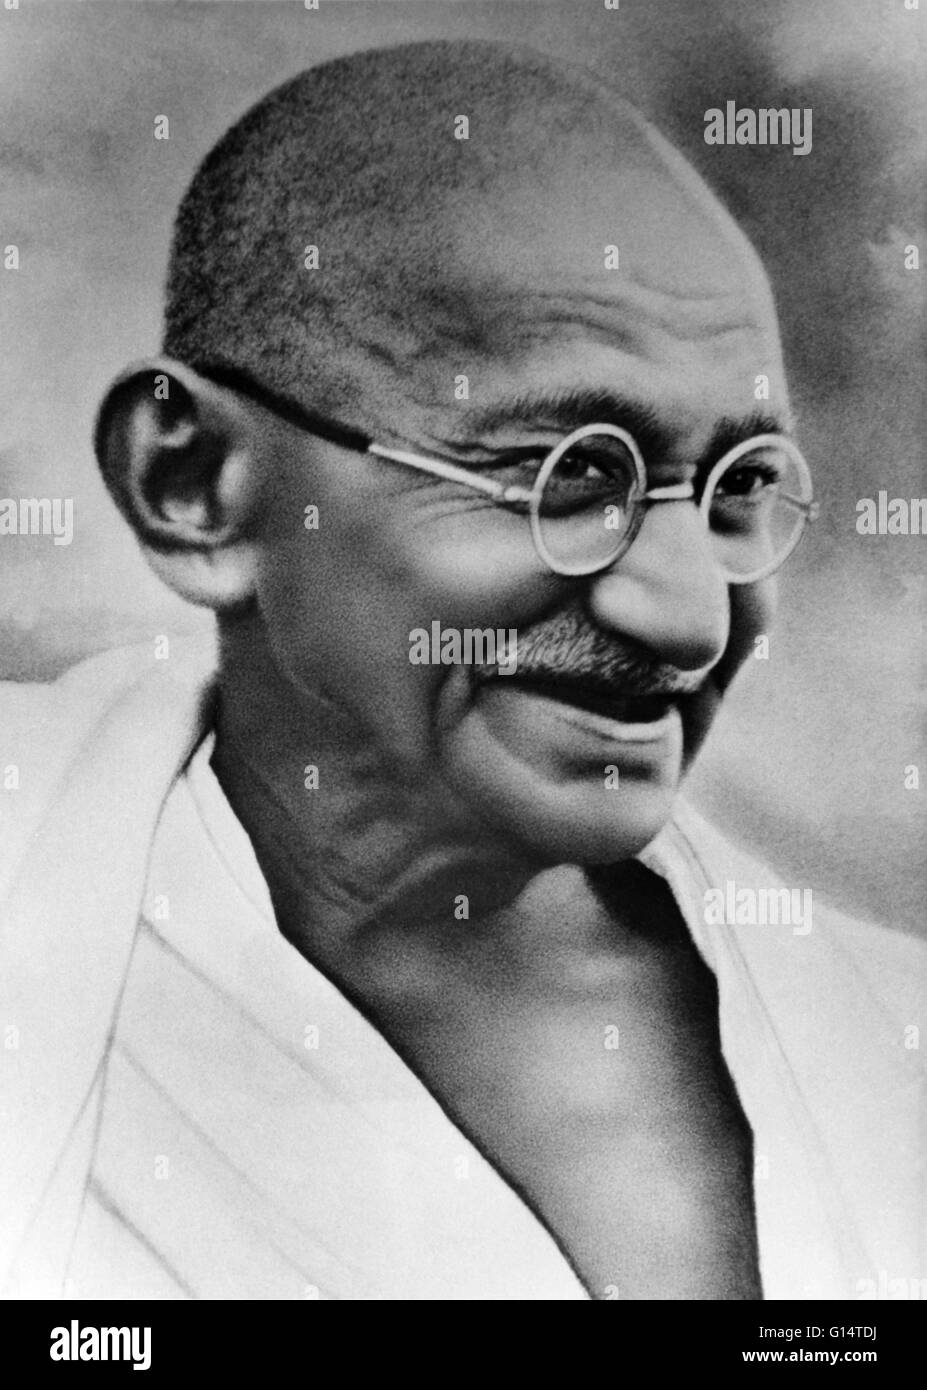 Mohandas Karamchand Gandhi (2 ottobre 1869 - 30 gennaio 1948) era la preminenza politica ed ideologica leader dell'India durante l'Indiano movimento di indipendenza. Sperimentando l'uso della resistenza non violenta alla tirannia attraverso la massa di disobbedienza civile, Foto Stock